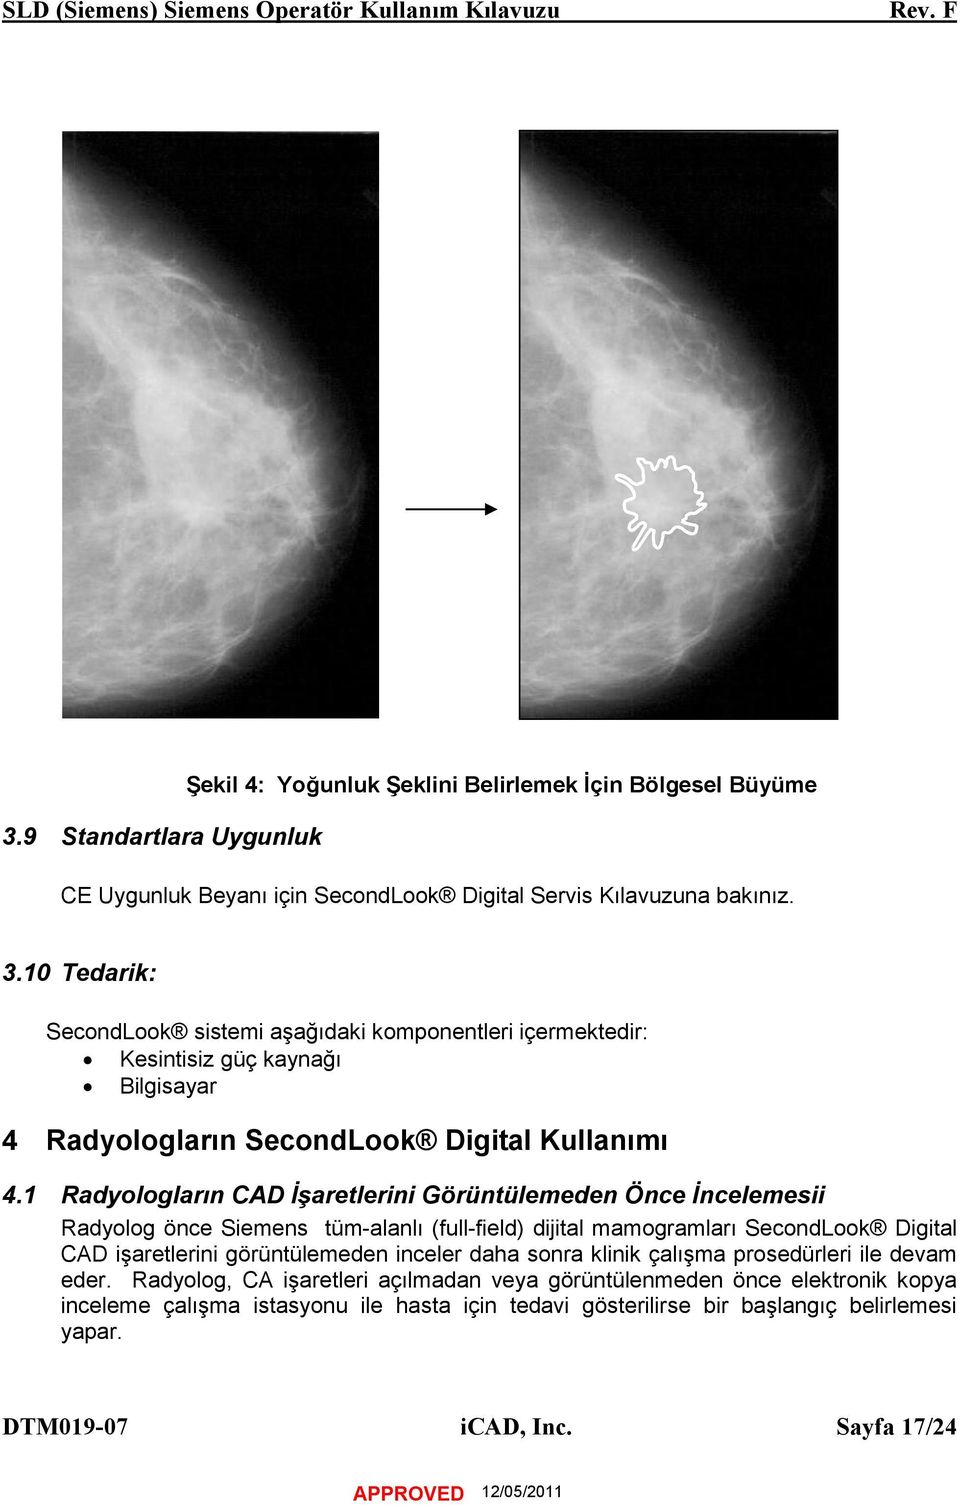 1 Radyologların CAD İşaretlerini Görüntülemeden Önce İncelemesii Radyolog önce Siemens tüm-alanlı (full-field) dijital mamogramları SecondLook Digital CAD işaretlerini görüntülemeden